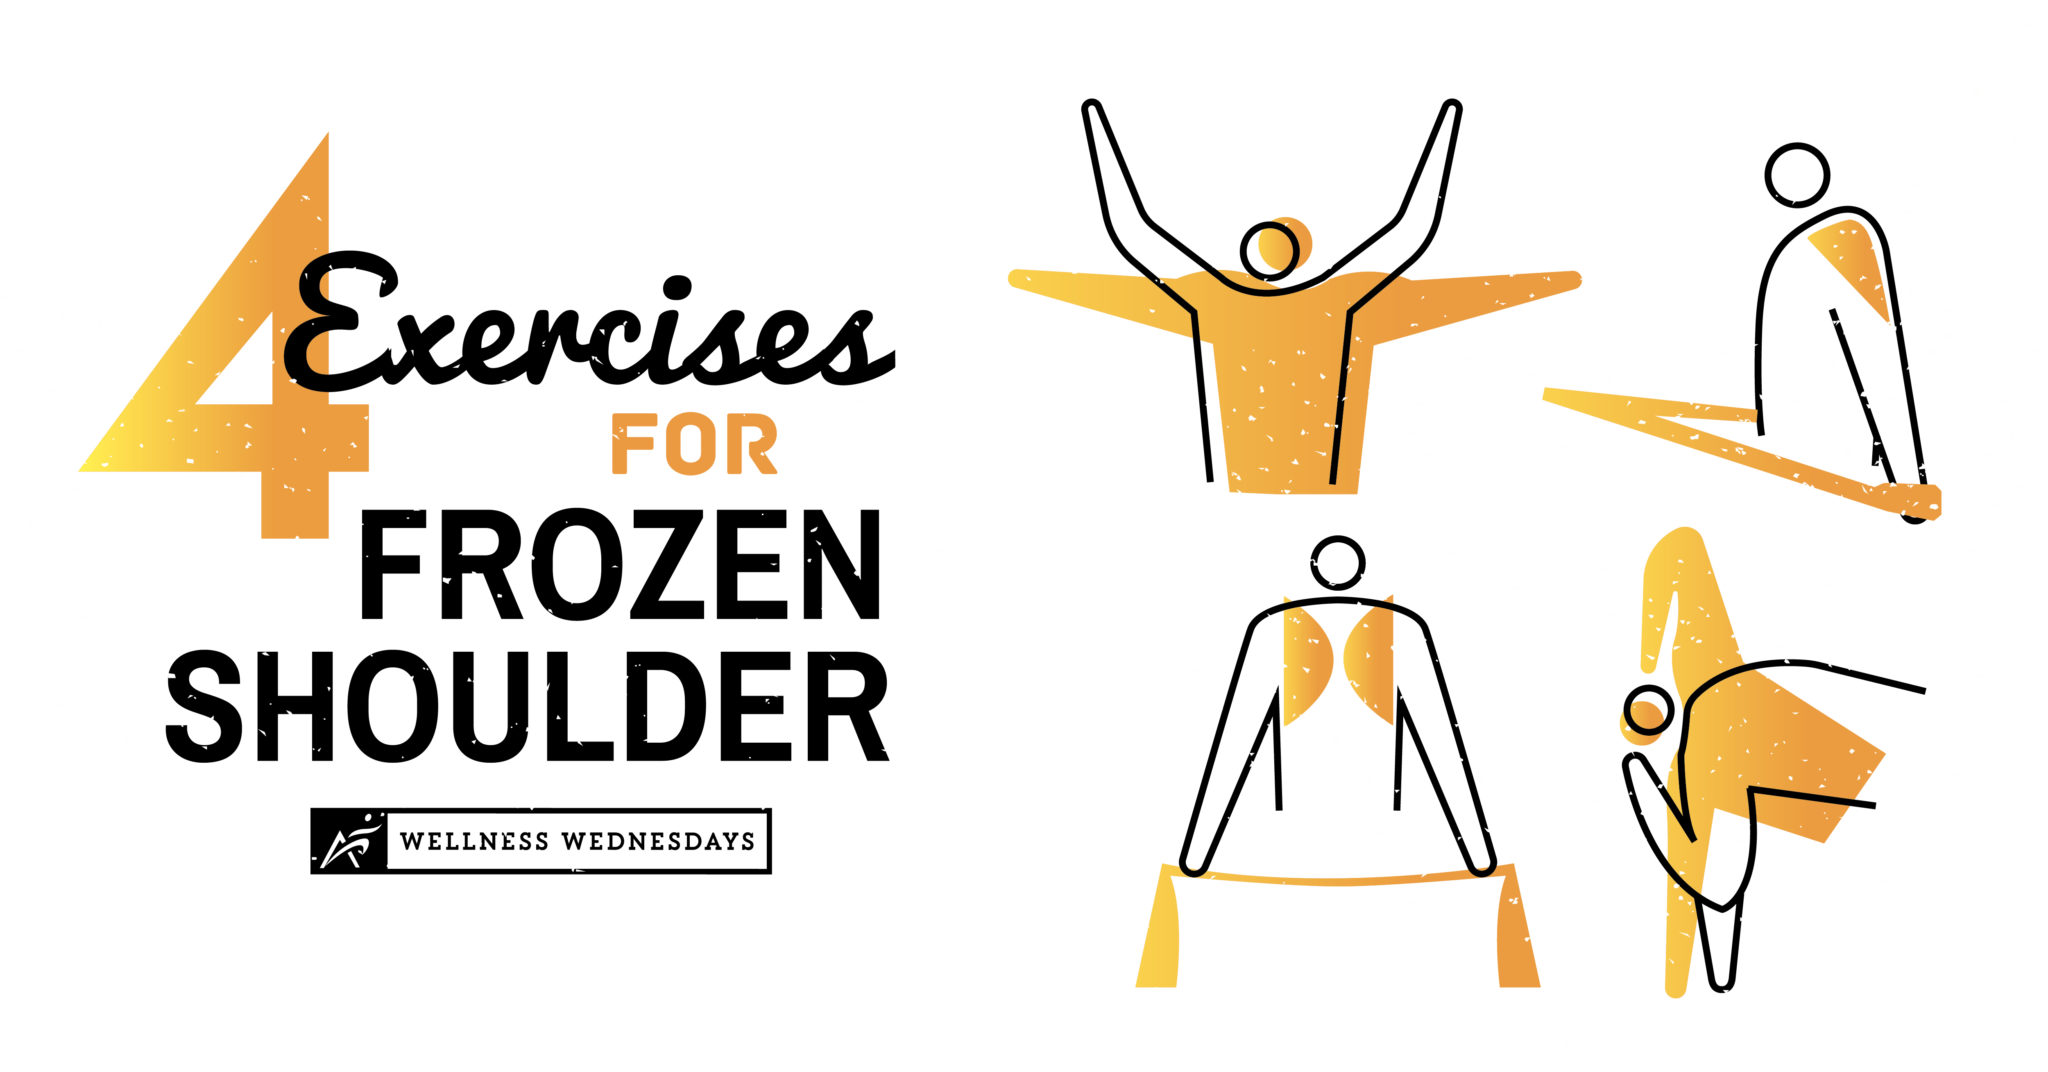 4 Exercises for Frozen Shoulder